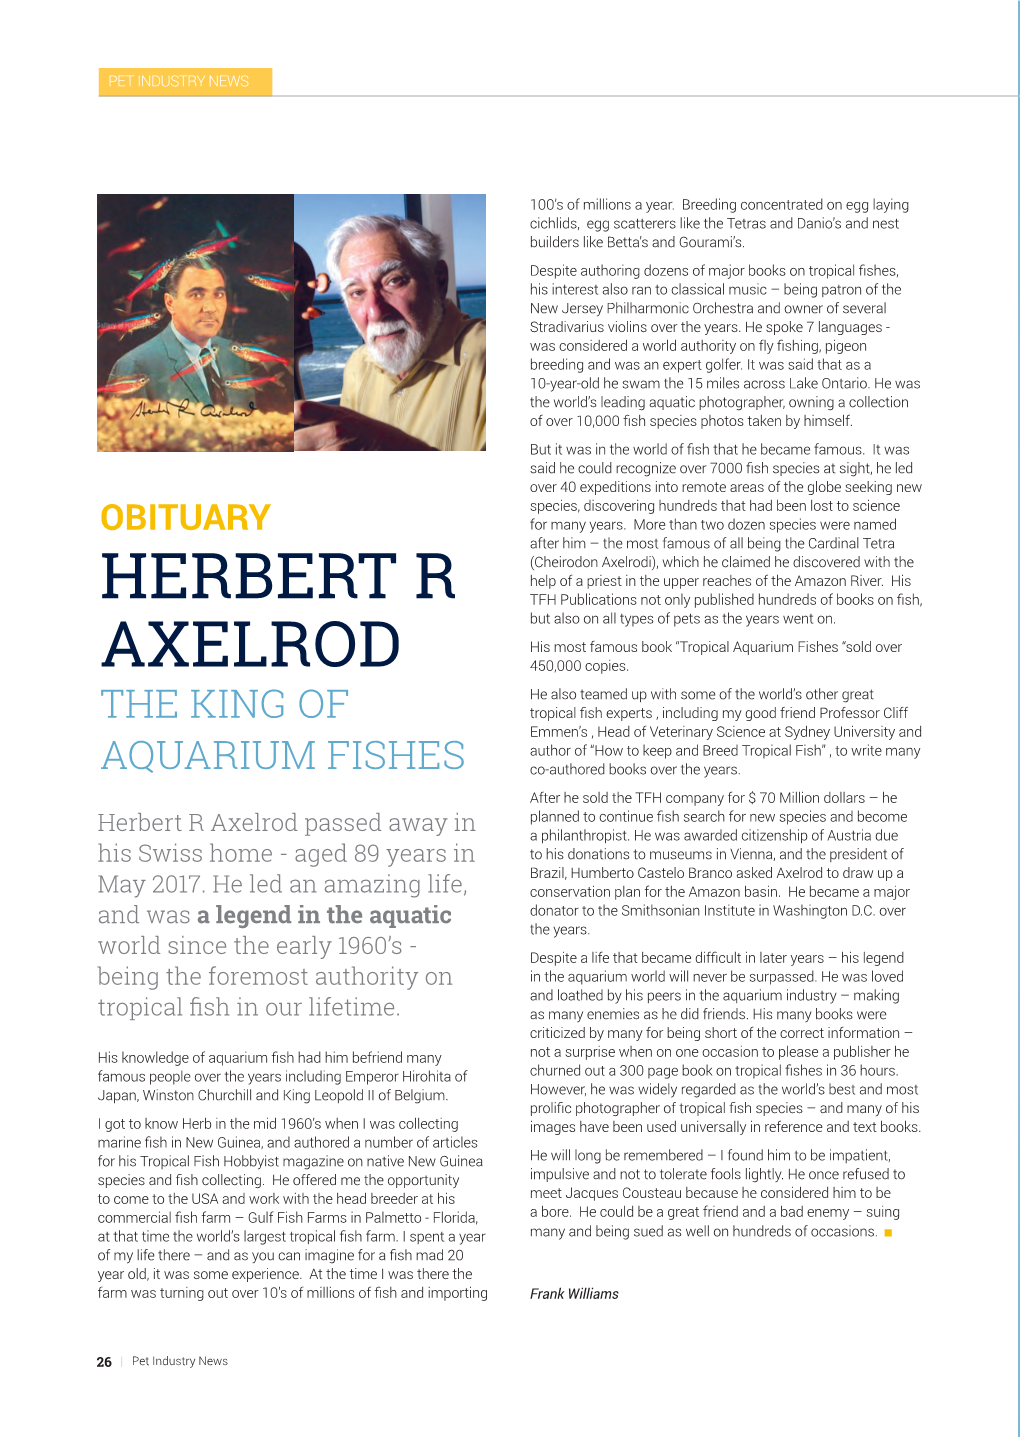 Herbert R Axelrod Passed Away in a Philanthropist